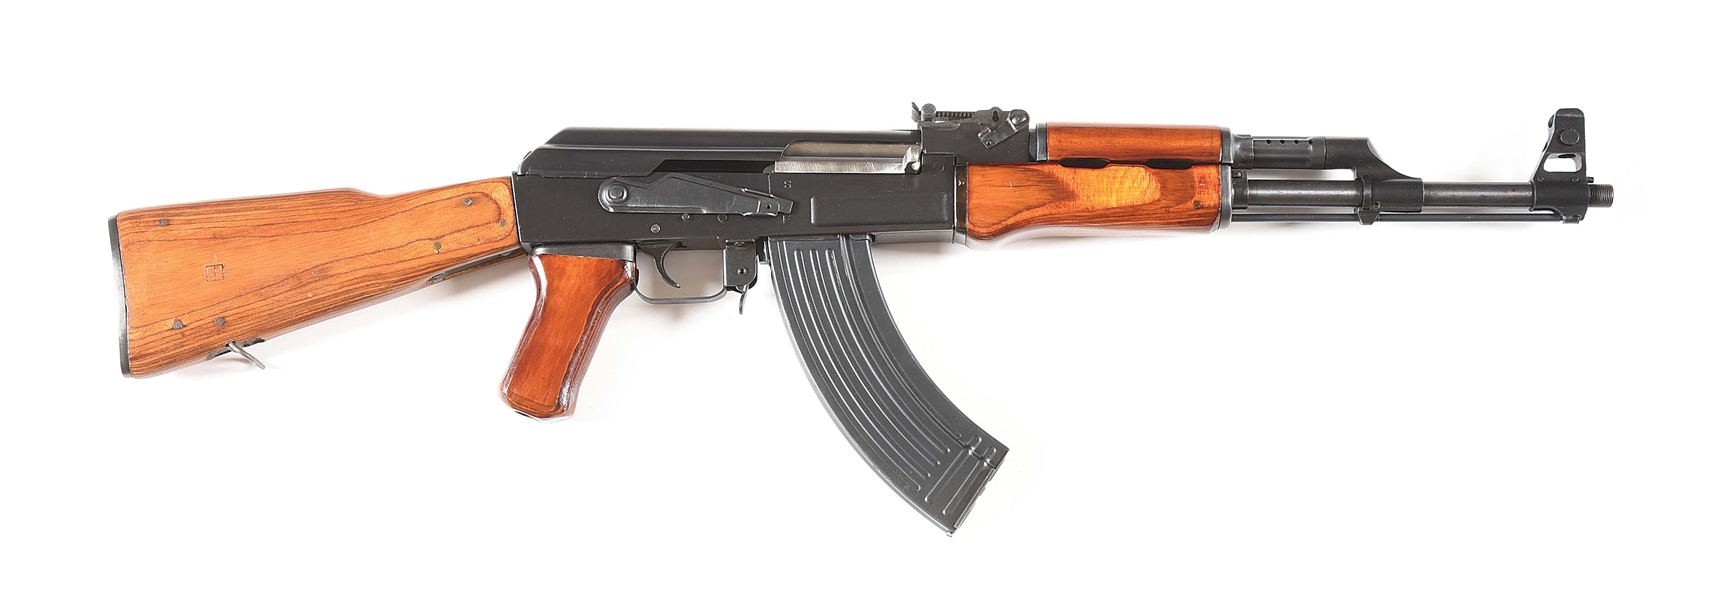 (M) POLY TECH MODEL AK-47/S SEMI-AUTOMATIC RIFLE.